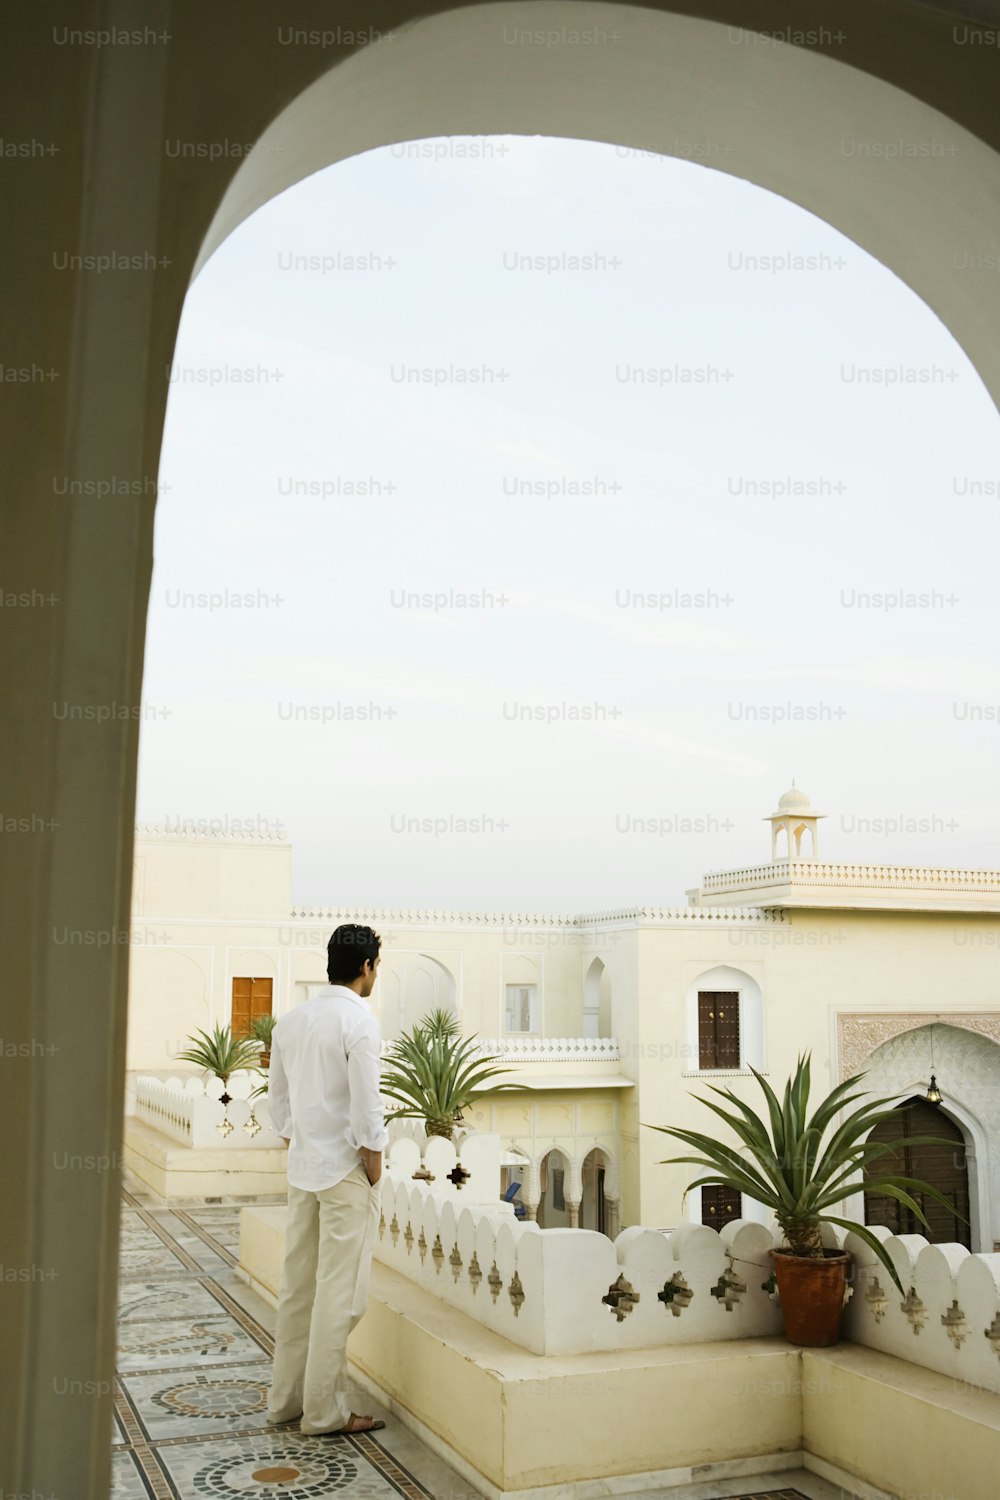 Ein Mann, der auf einem Balkon neben einer Topfpflanze steht